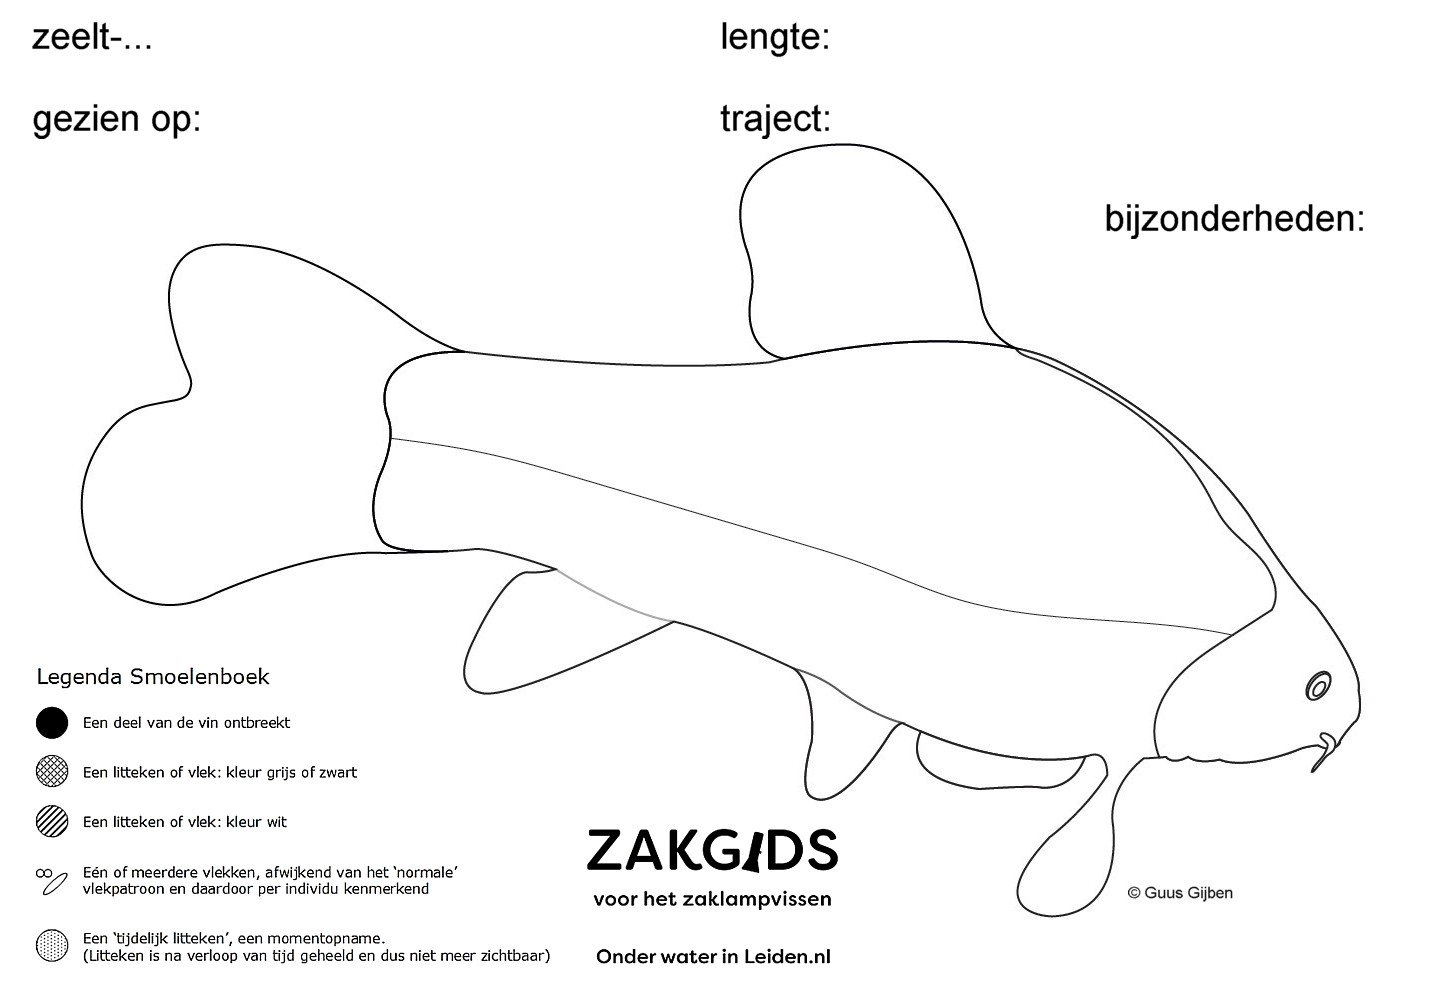 lijntekening zeelt rechterflank: uit de zakgids voor het zaklampvissen